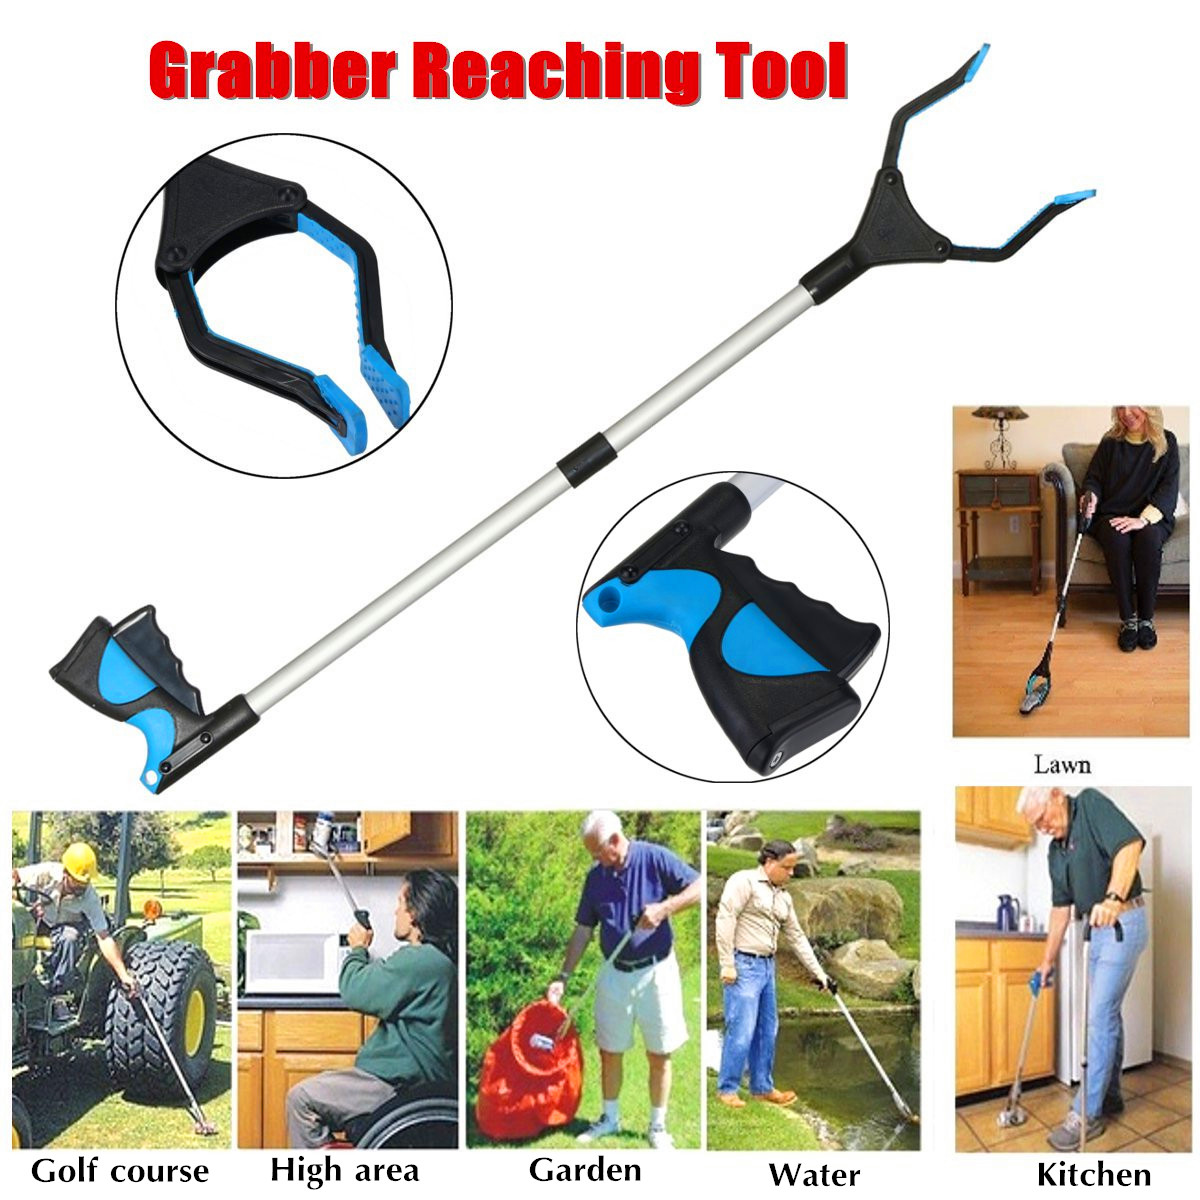 32inch-Reaching-Grabber-Tool-Reacher-Handicap-Grip-Aid-Trash-Pick-Up-Easy-Reach-1222132-1